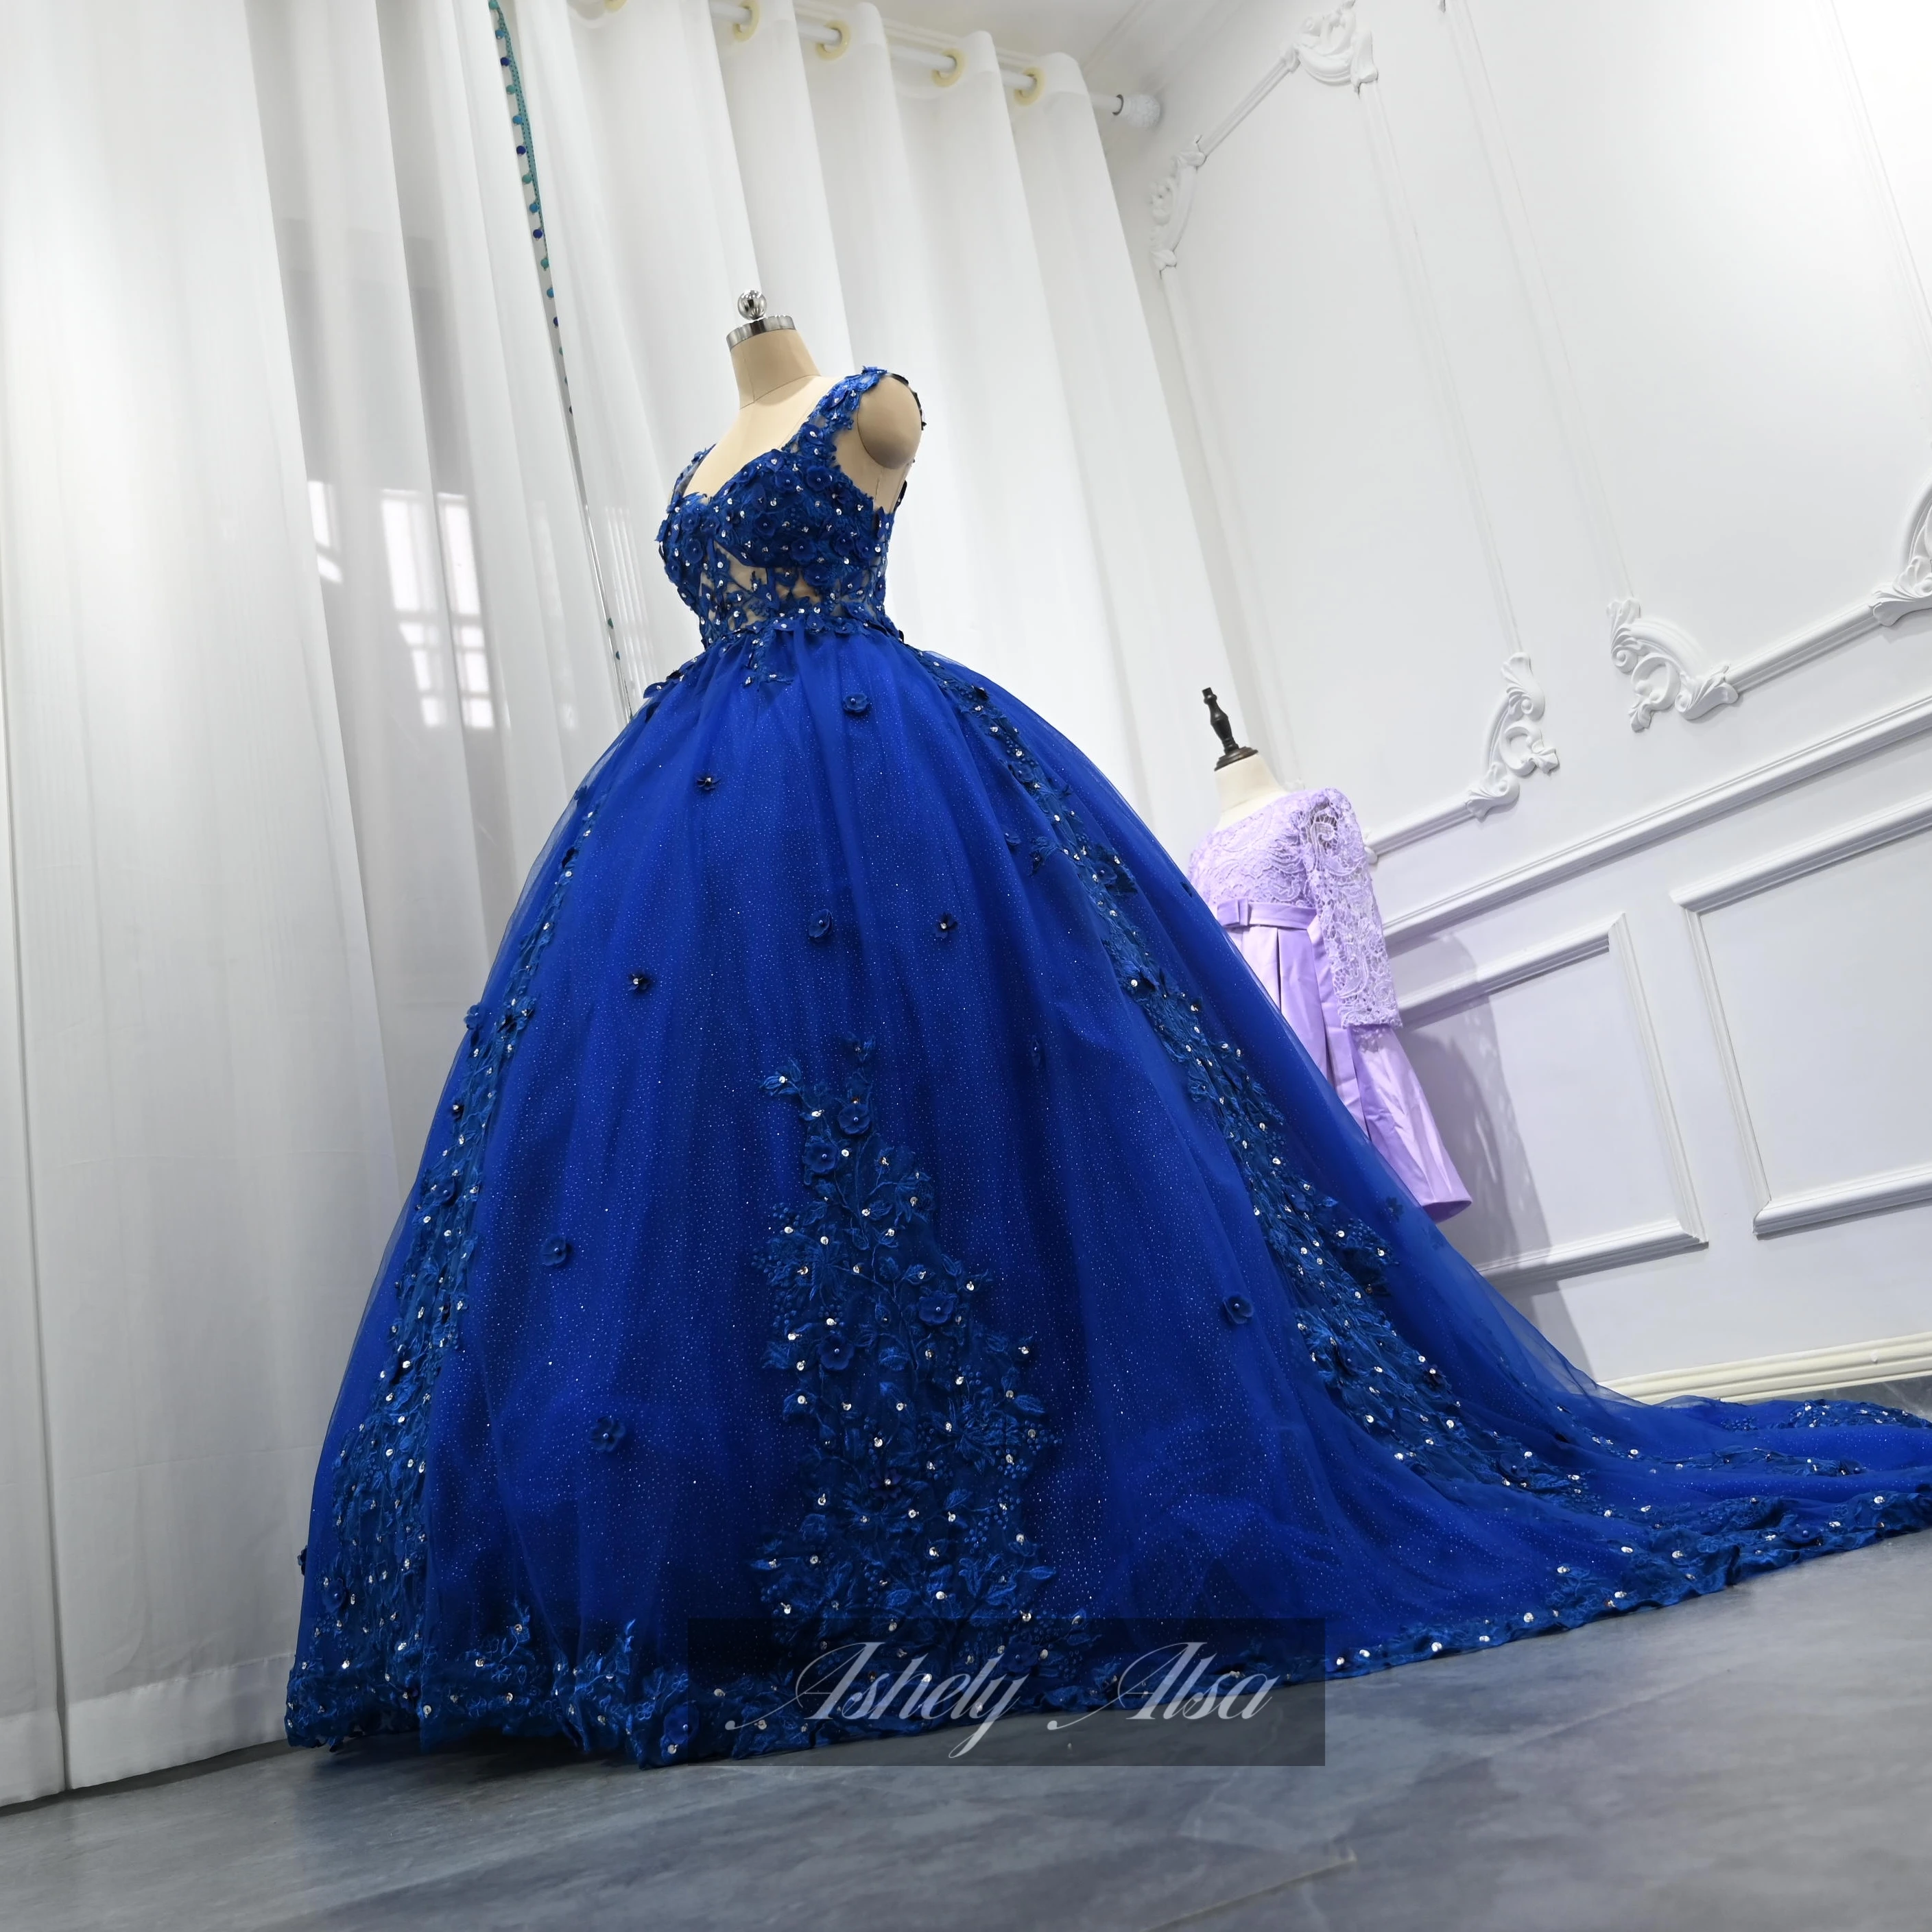 Ashely Alsa Blue Quinceanera Платья 3D цветок Принцесса 16 лет Бальные платья для девочек Официальная вечеринка Платье для выпускного вечера Vestidos De 15 Anos Изображение 2